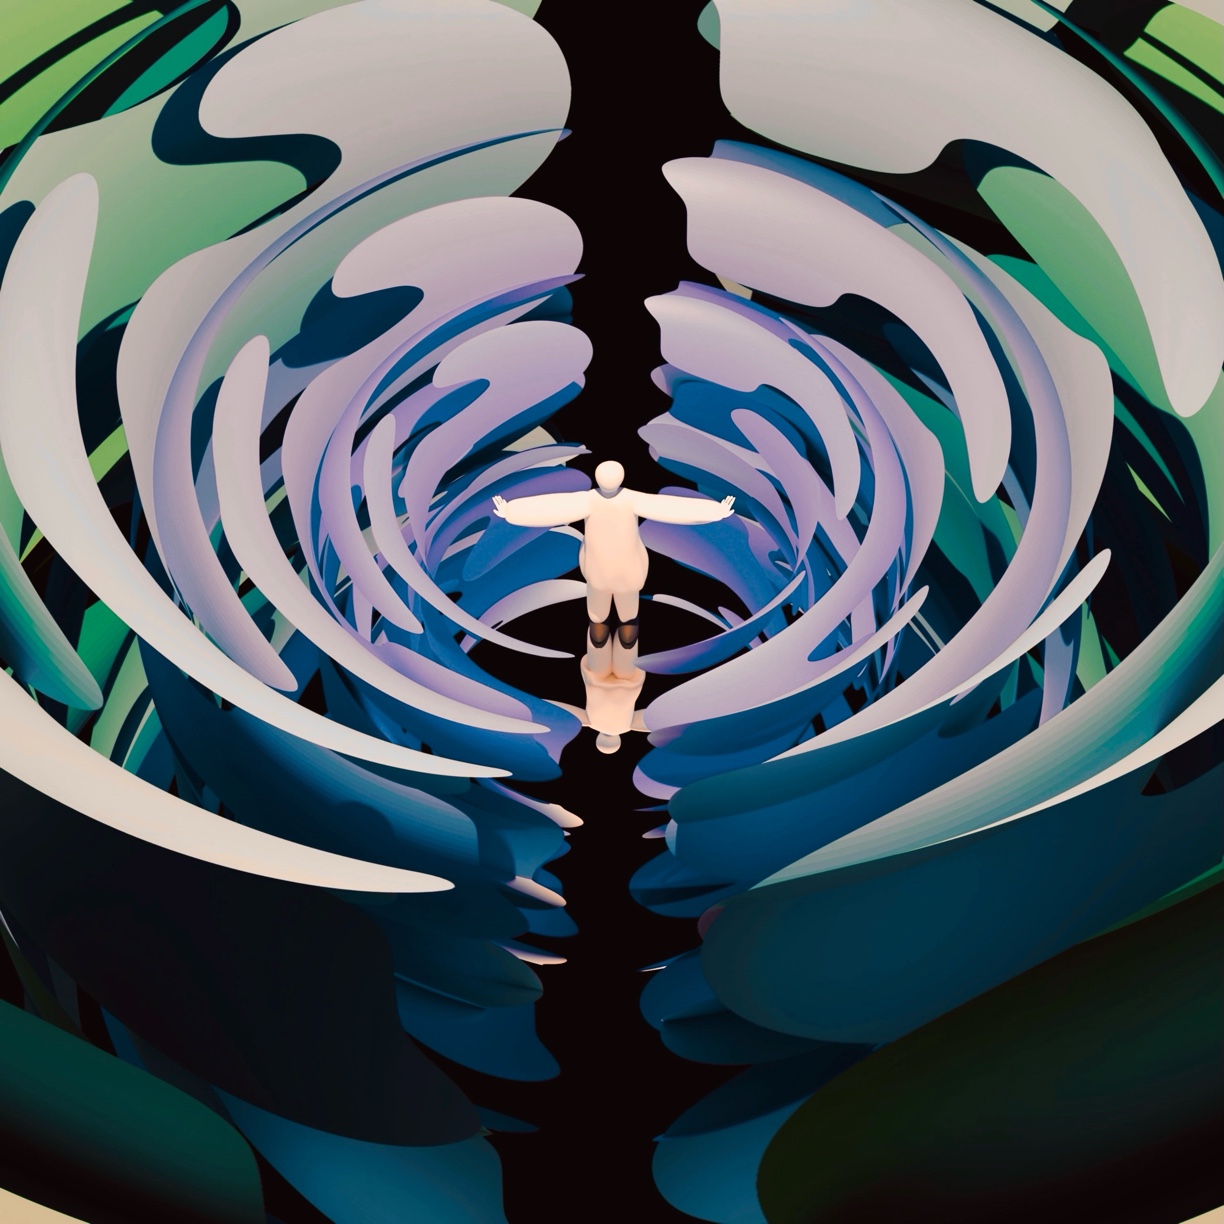 Atsushigraphのデジタルアート作品「Conductor」の画像です。